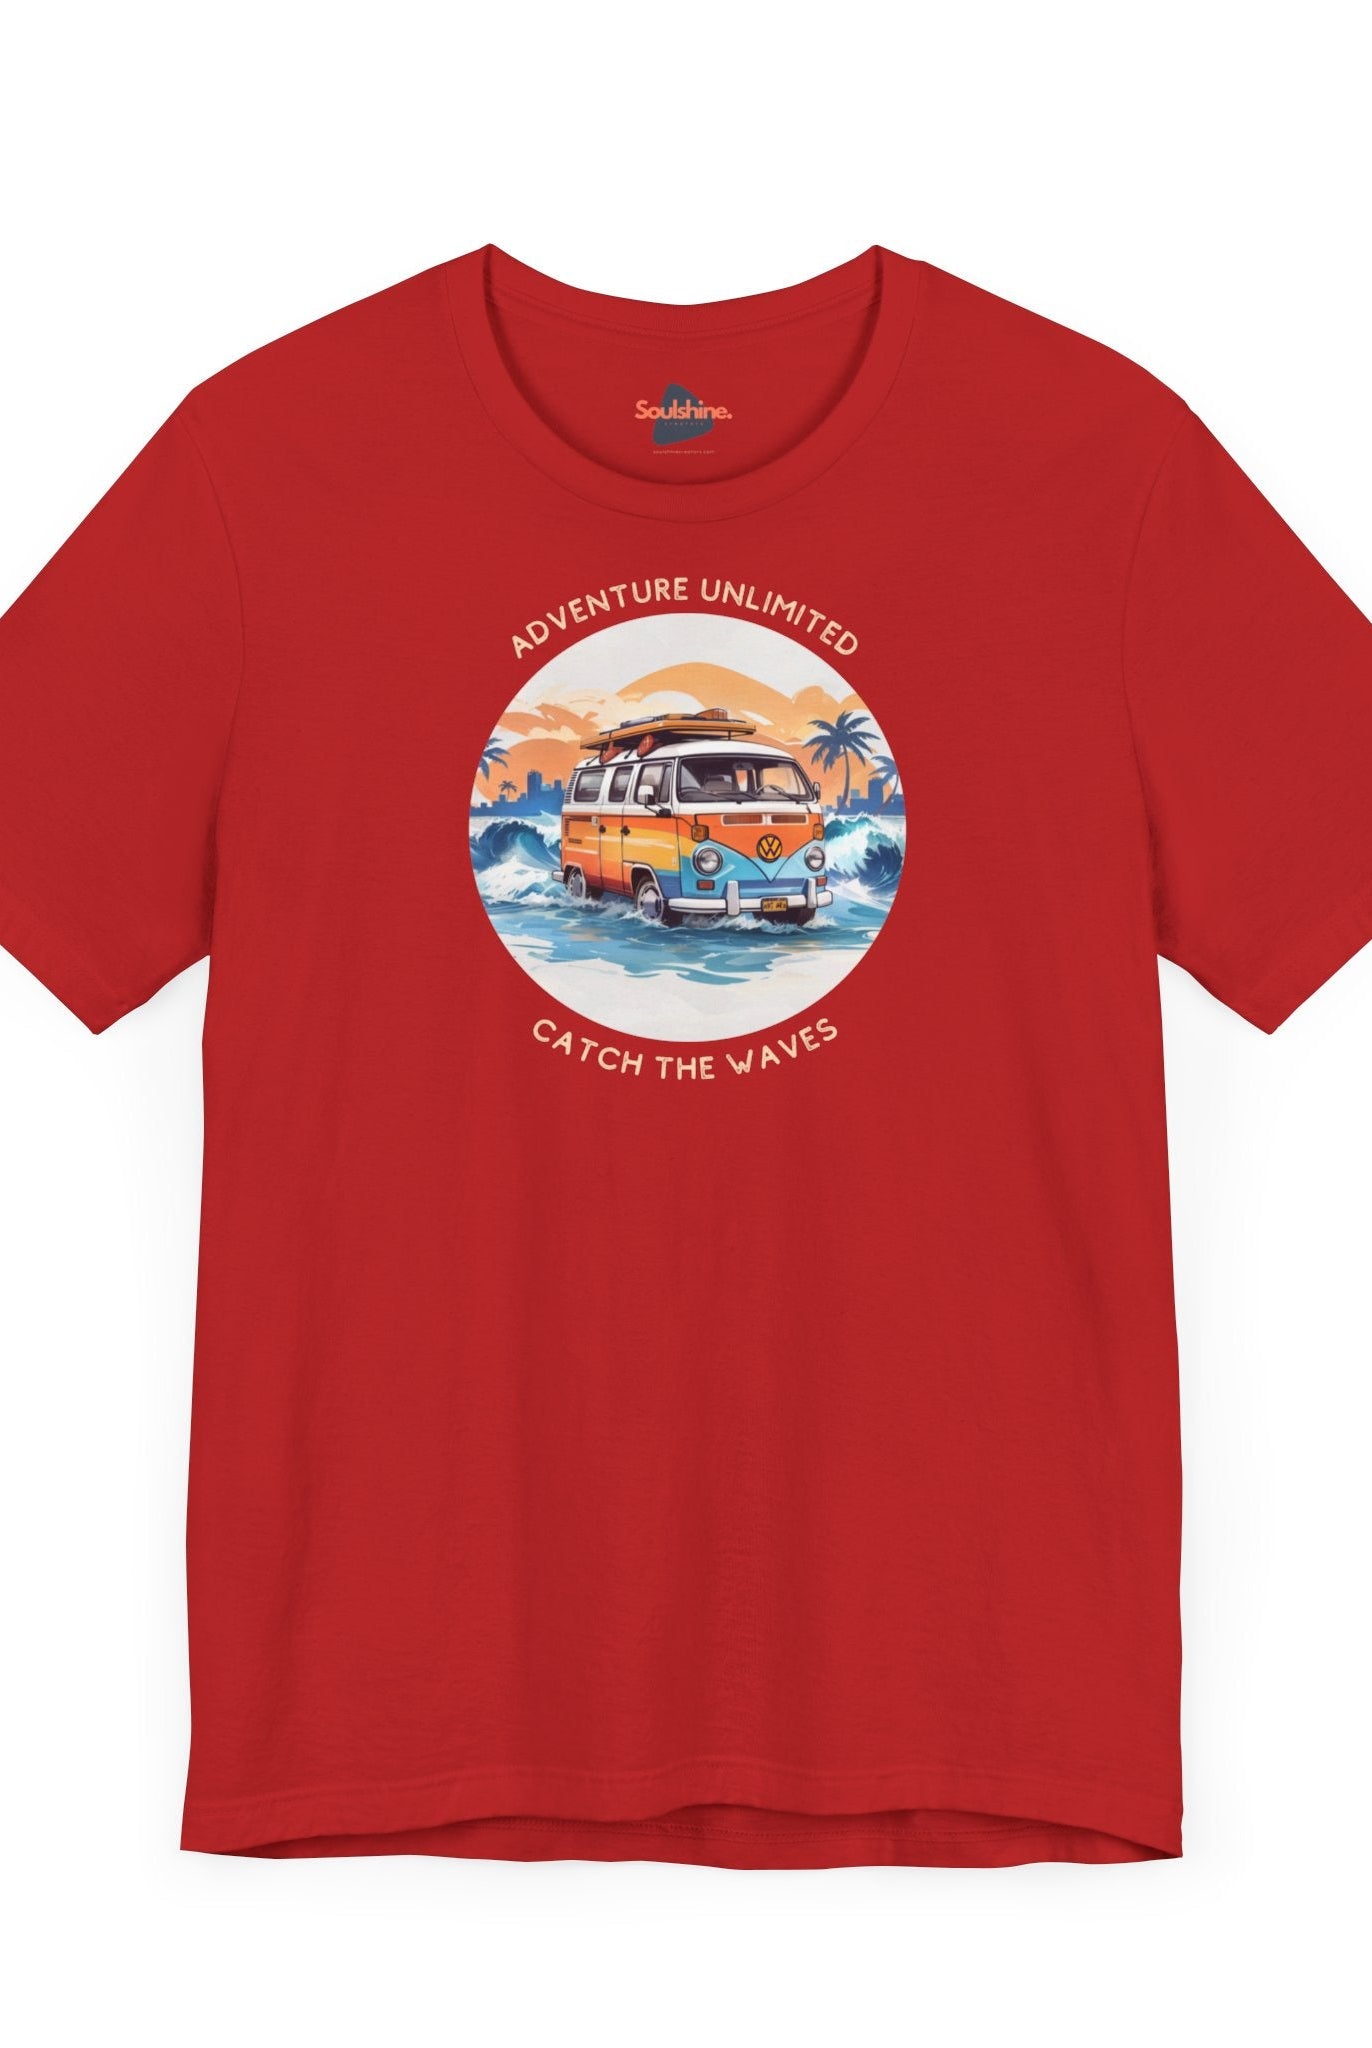 Adventure Unlimited - Surfing T-Shirt - Soulshinecreators - Bella & Canvas - EU printed camper van life t-shirt